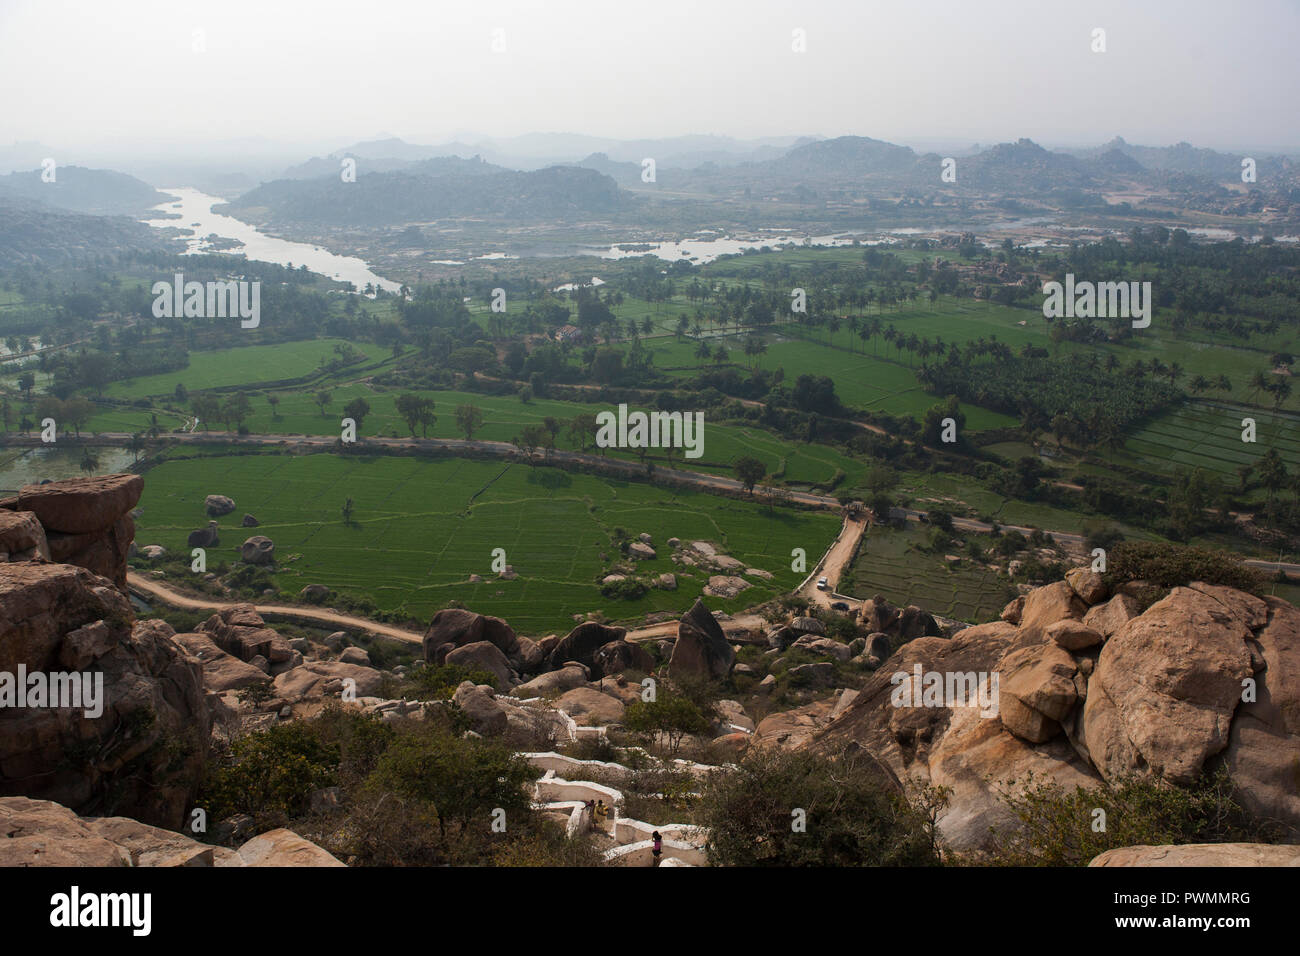 Vista del valle desde el Monte Anjaneya, Hampi, antigua capital del reino de Vijayanagara, Karnataka, India Foto de stock